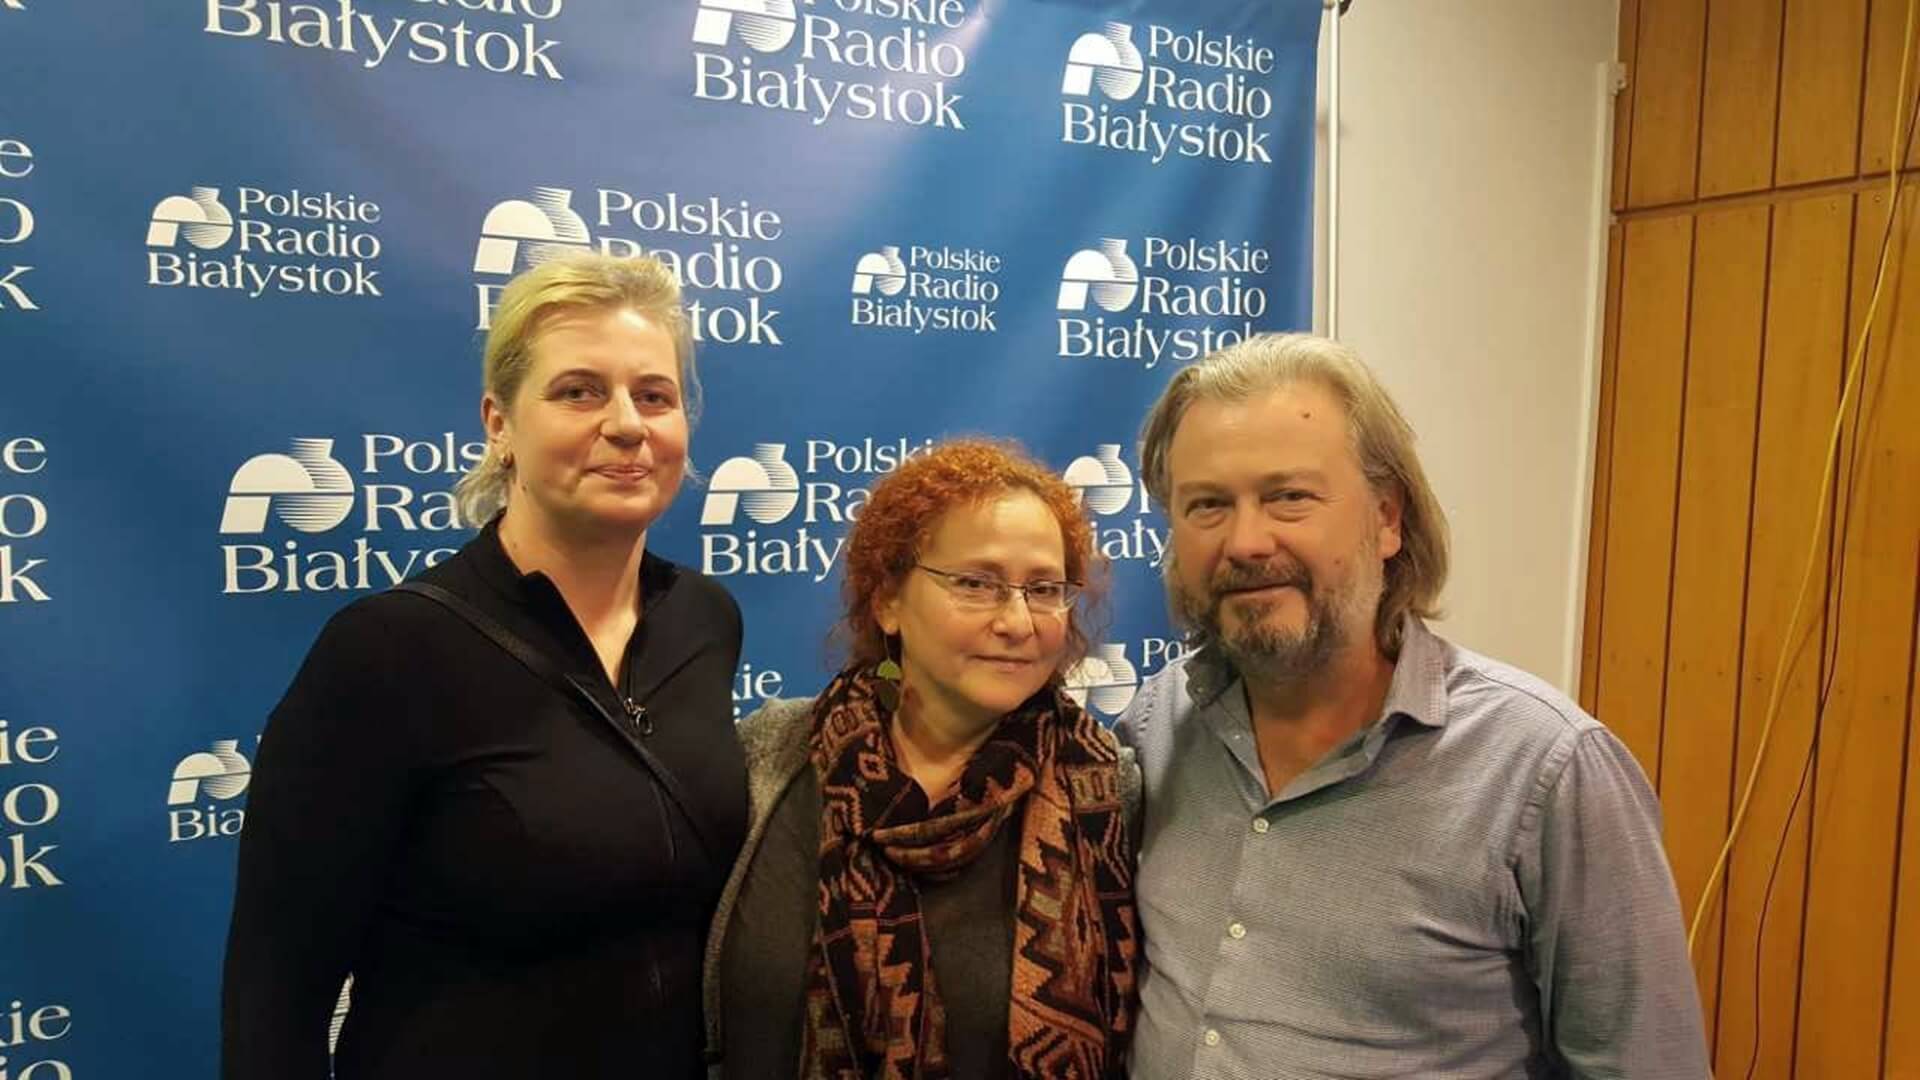 Małgorzata Gwoździej, Beata i Krzysztof Tarasiuk, fot. Aneta Gałaburda